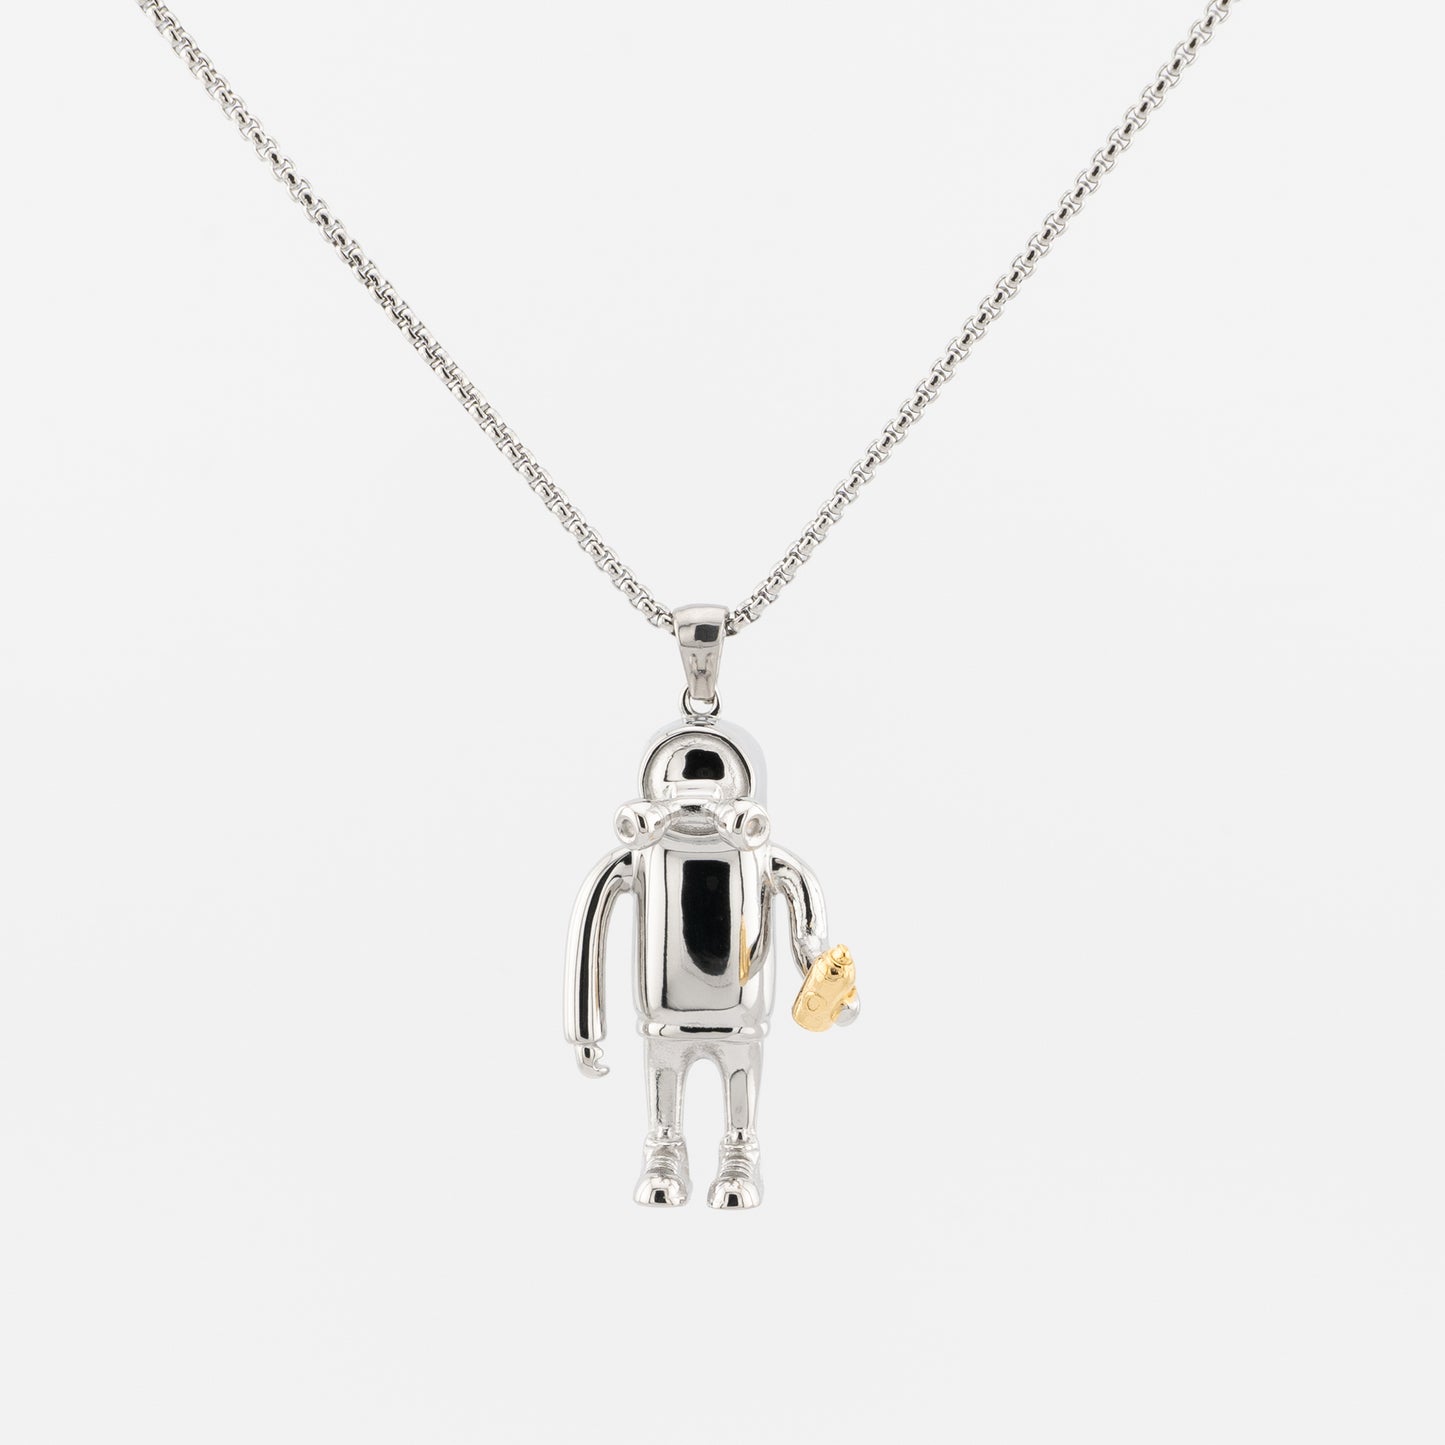 Mr. Roboto Pendant Necklace